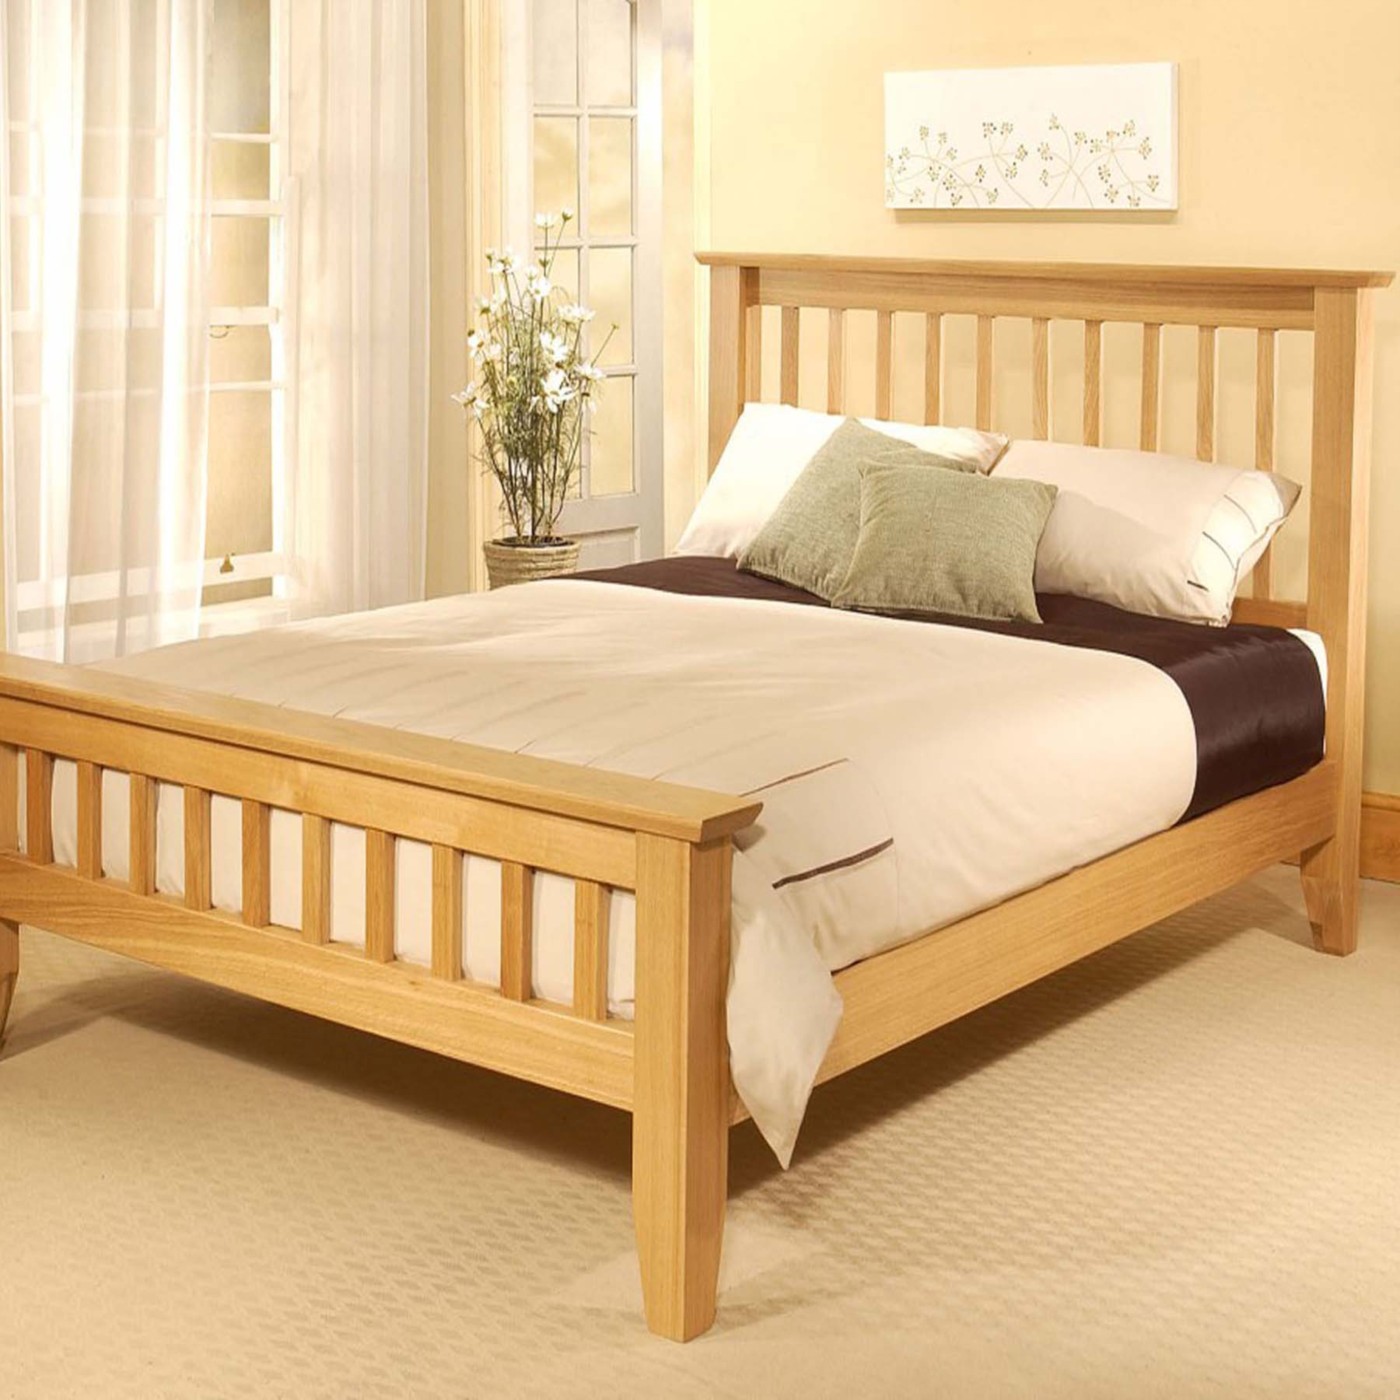 PDF Diy wooden bed frame designs DIY Free Plans Download ...